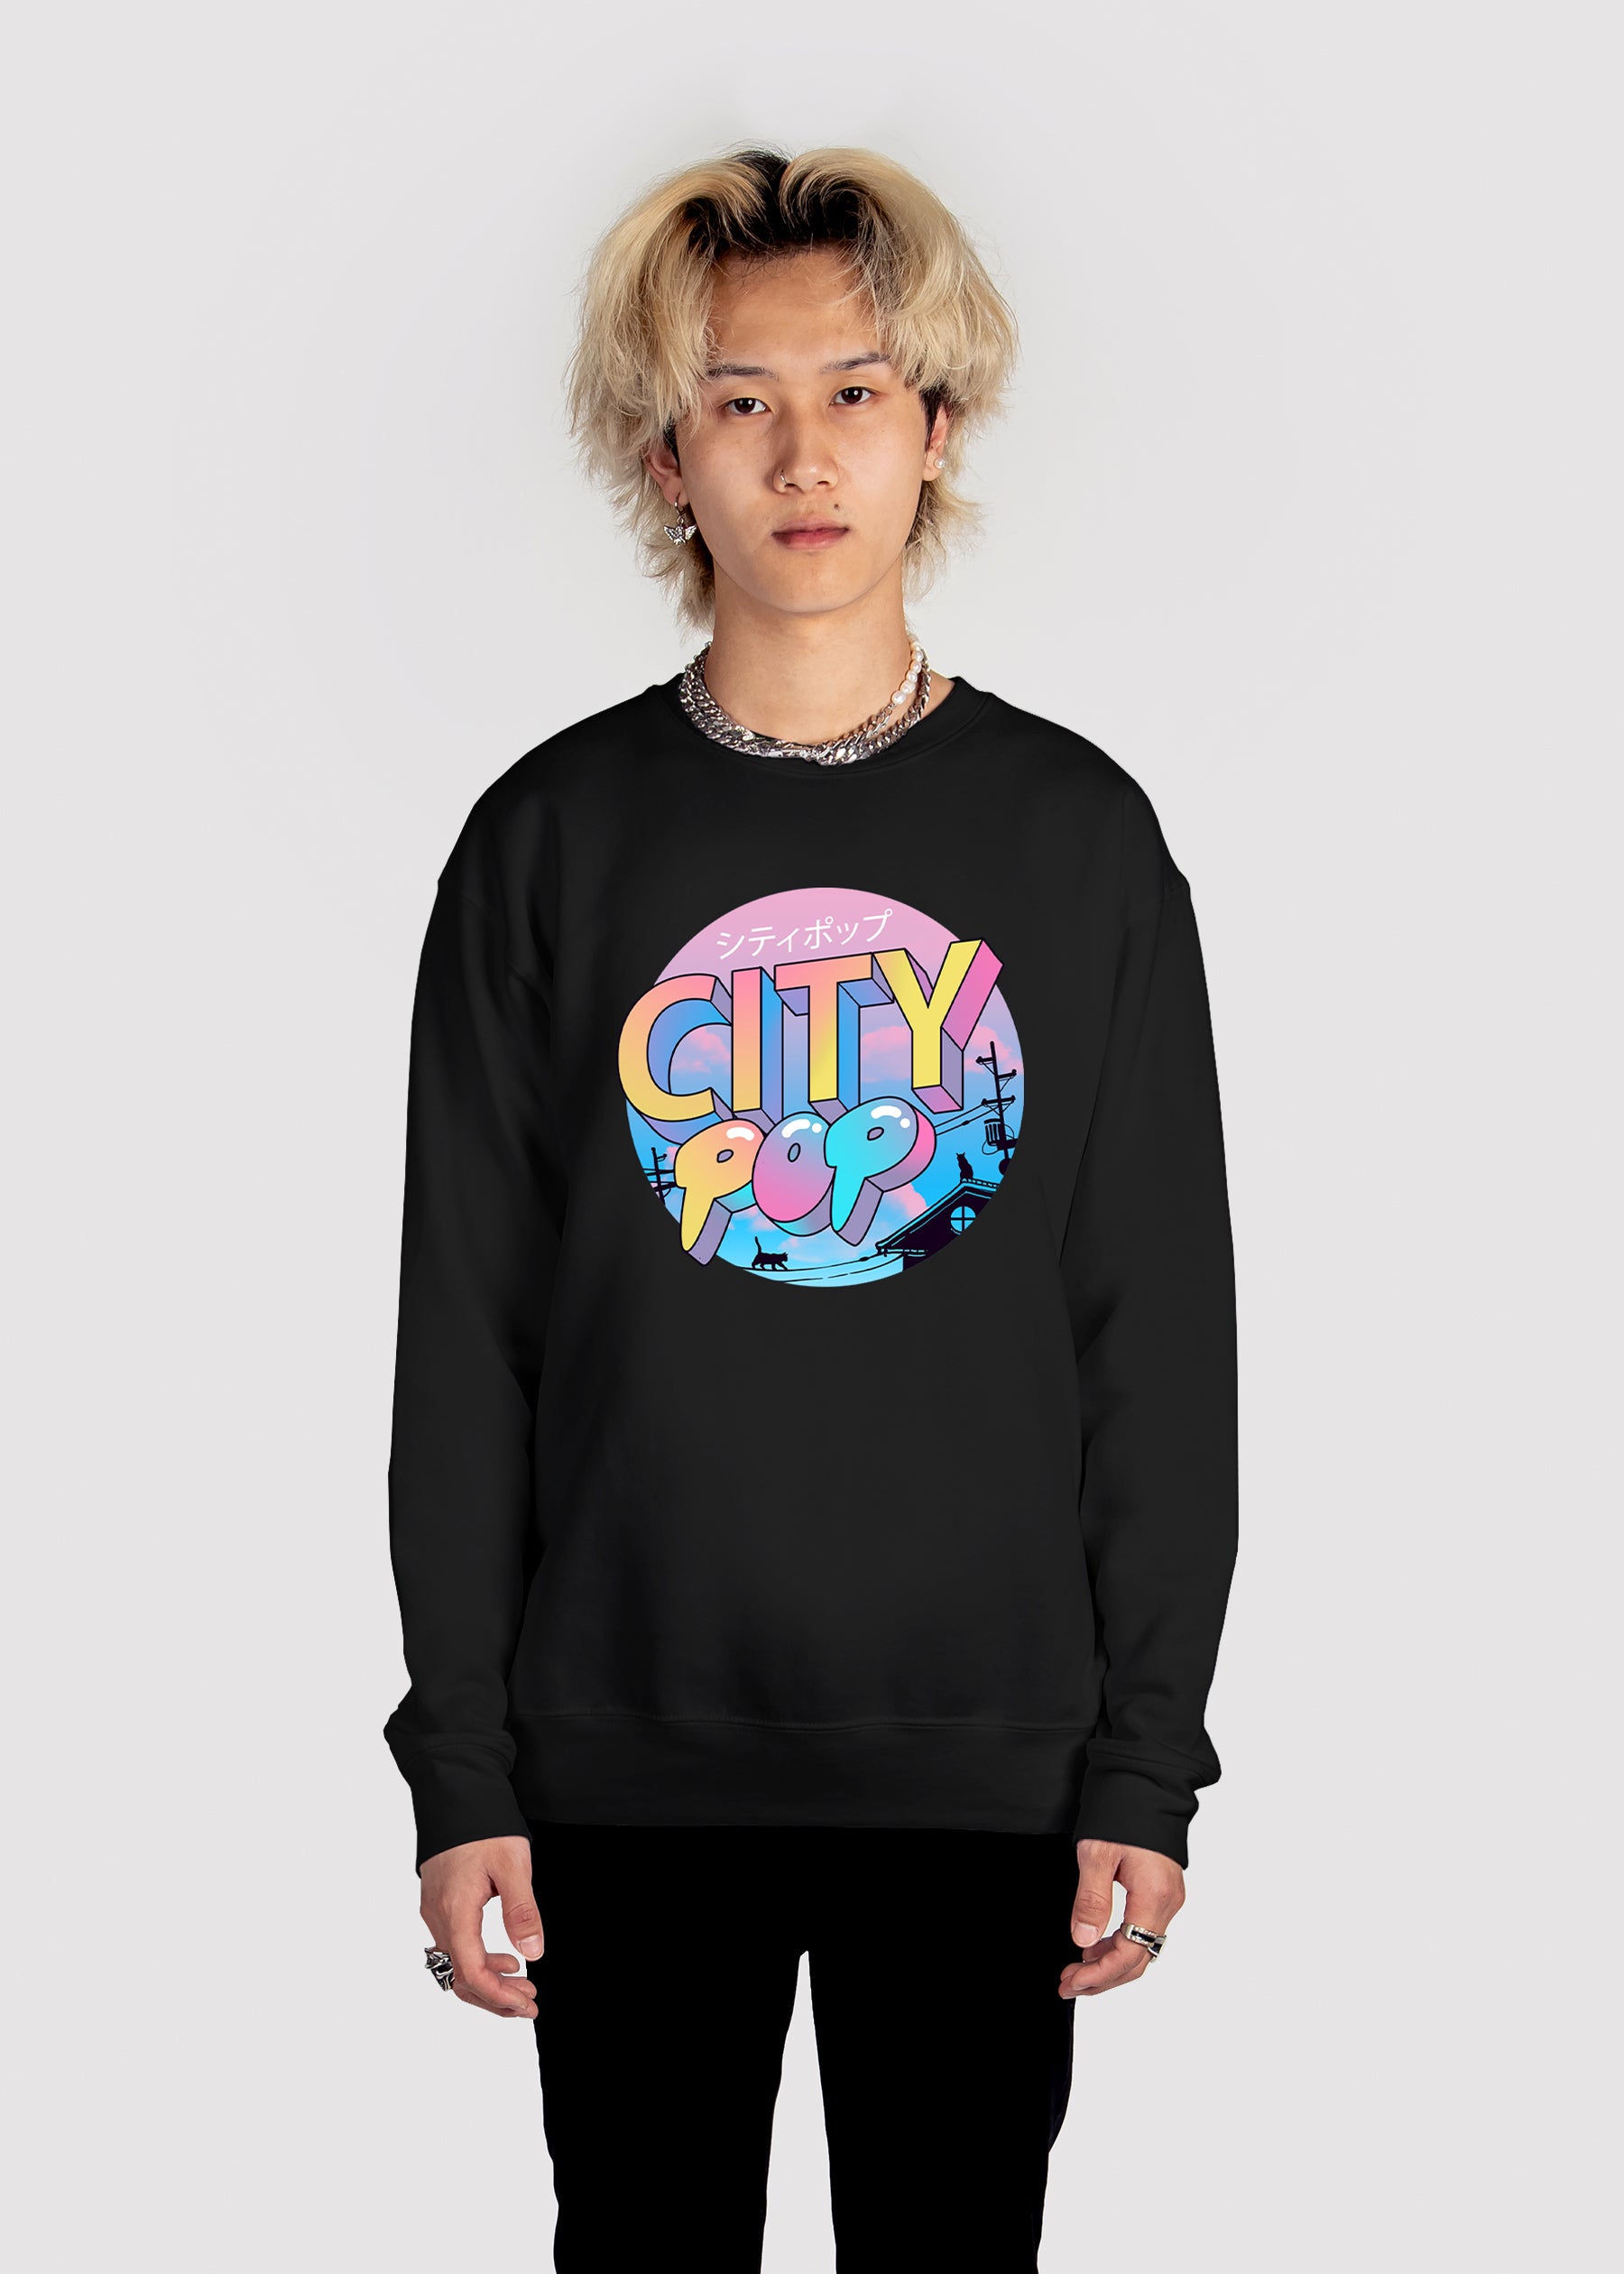 City Pop Sweatshirt